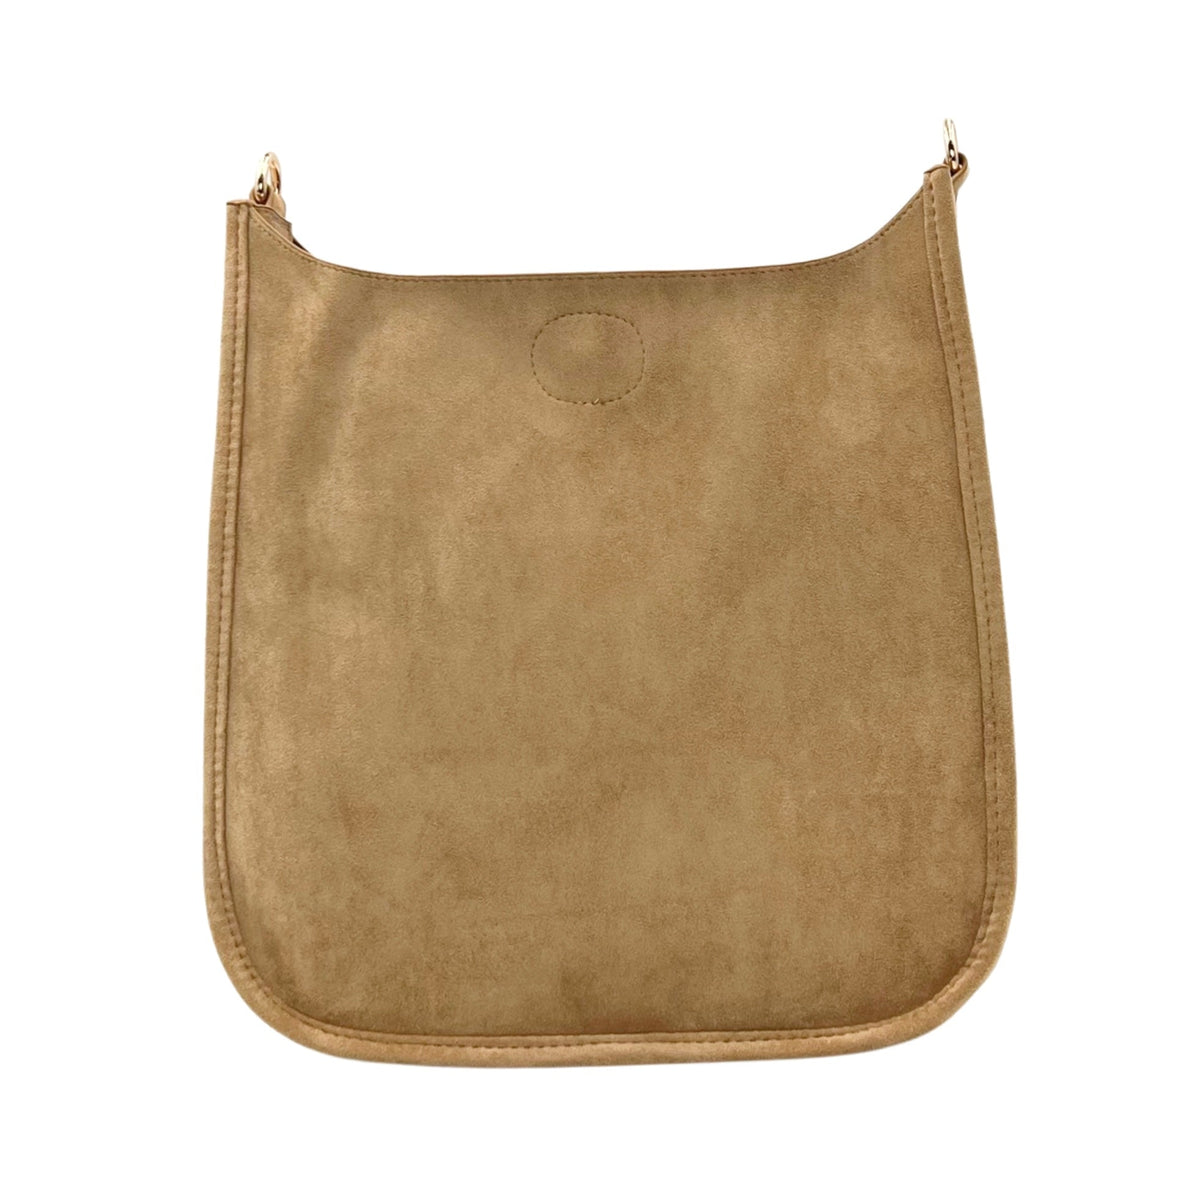  Camel Active Messenger Bag, Brown (Sand)